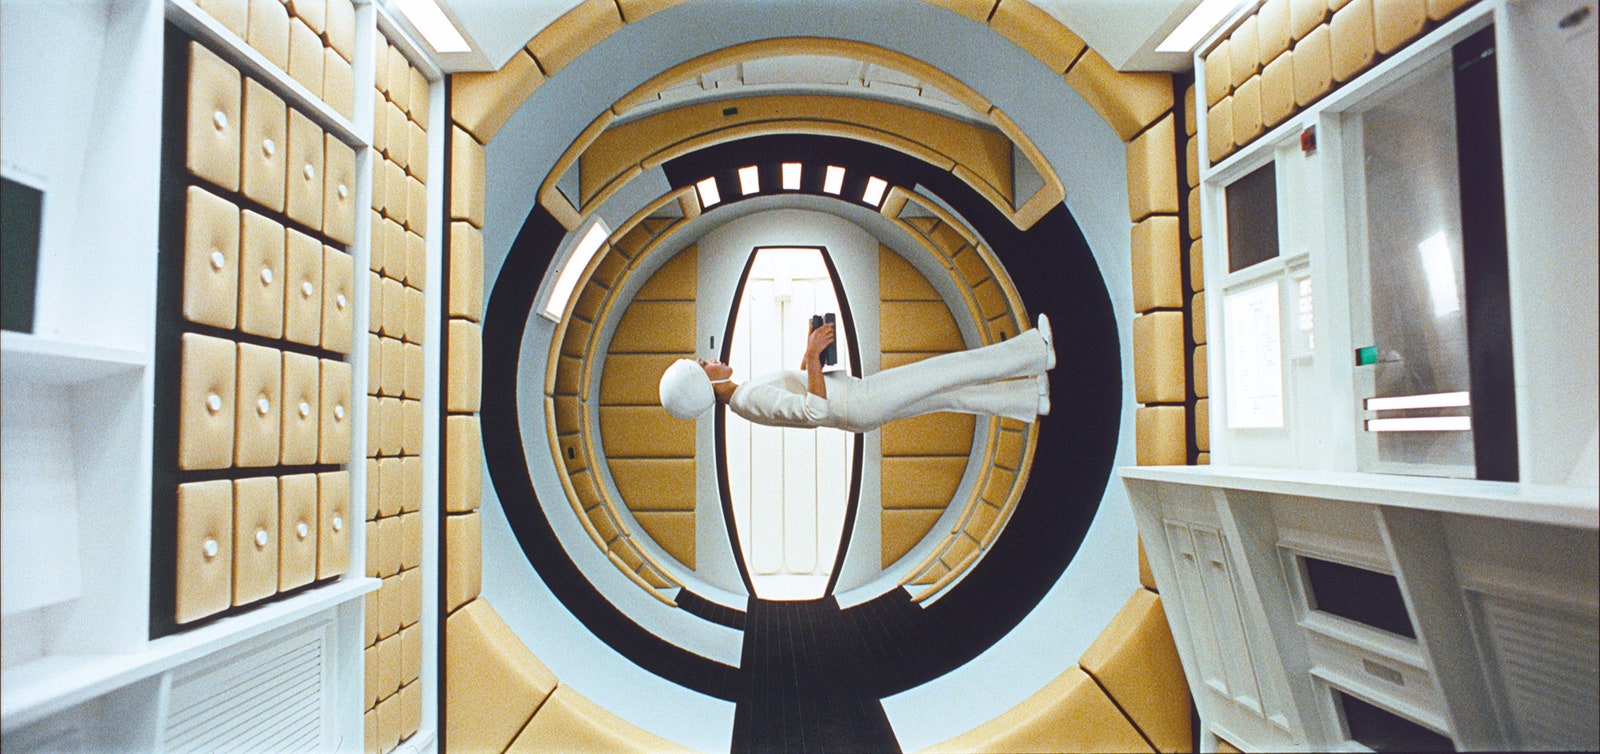 “2001 год Космическая одиссея” режиссер Стэнли Кубрик . Screen photo. © Warner Bros. Entertainment Inc.